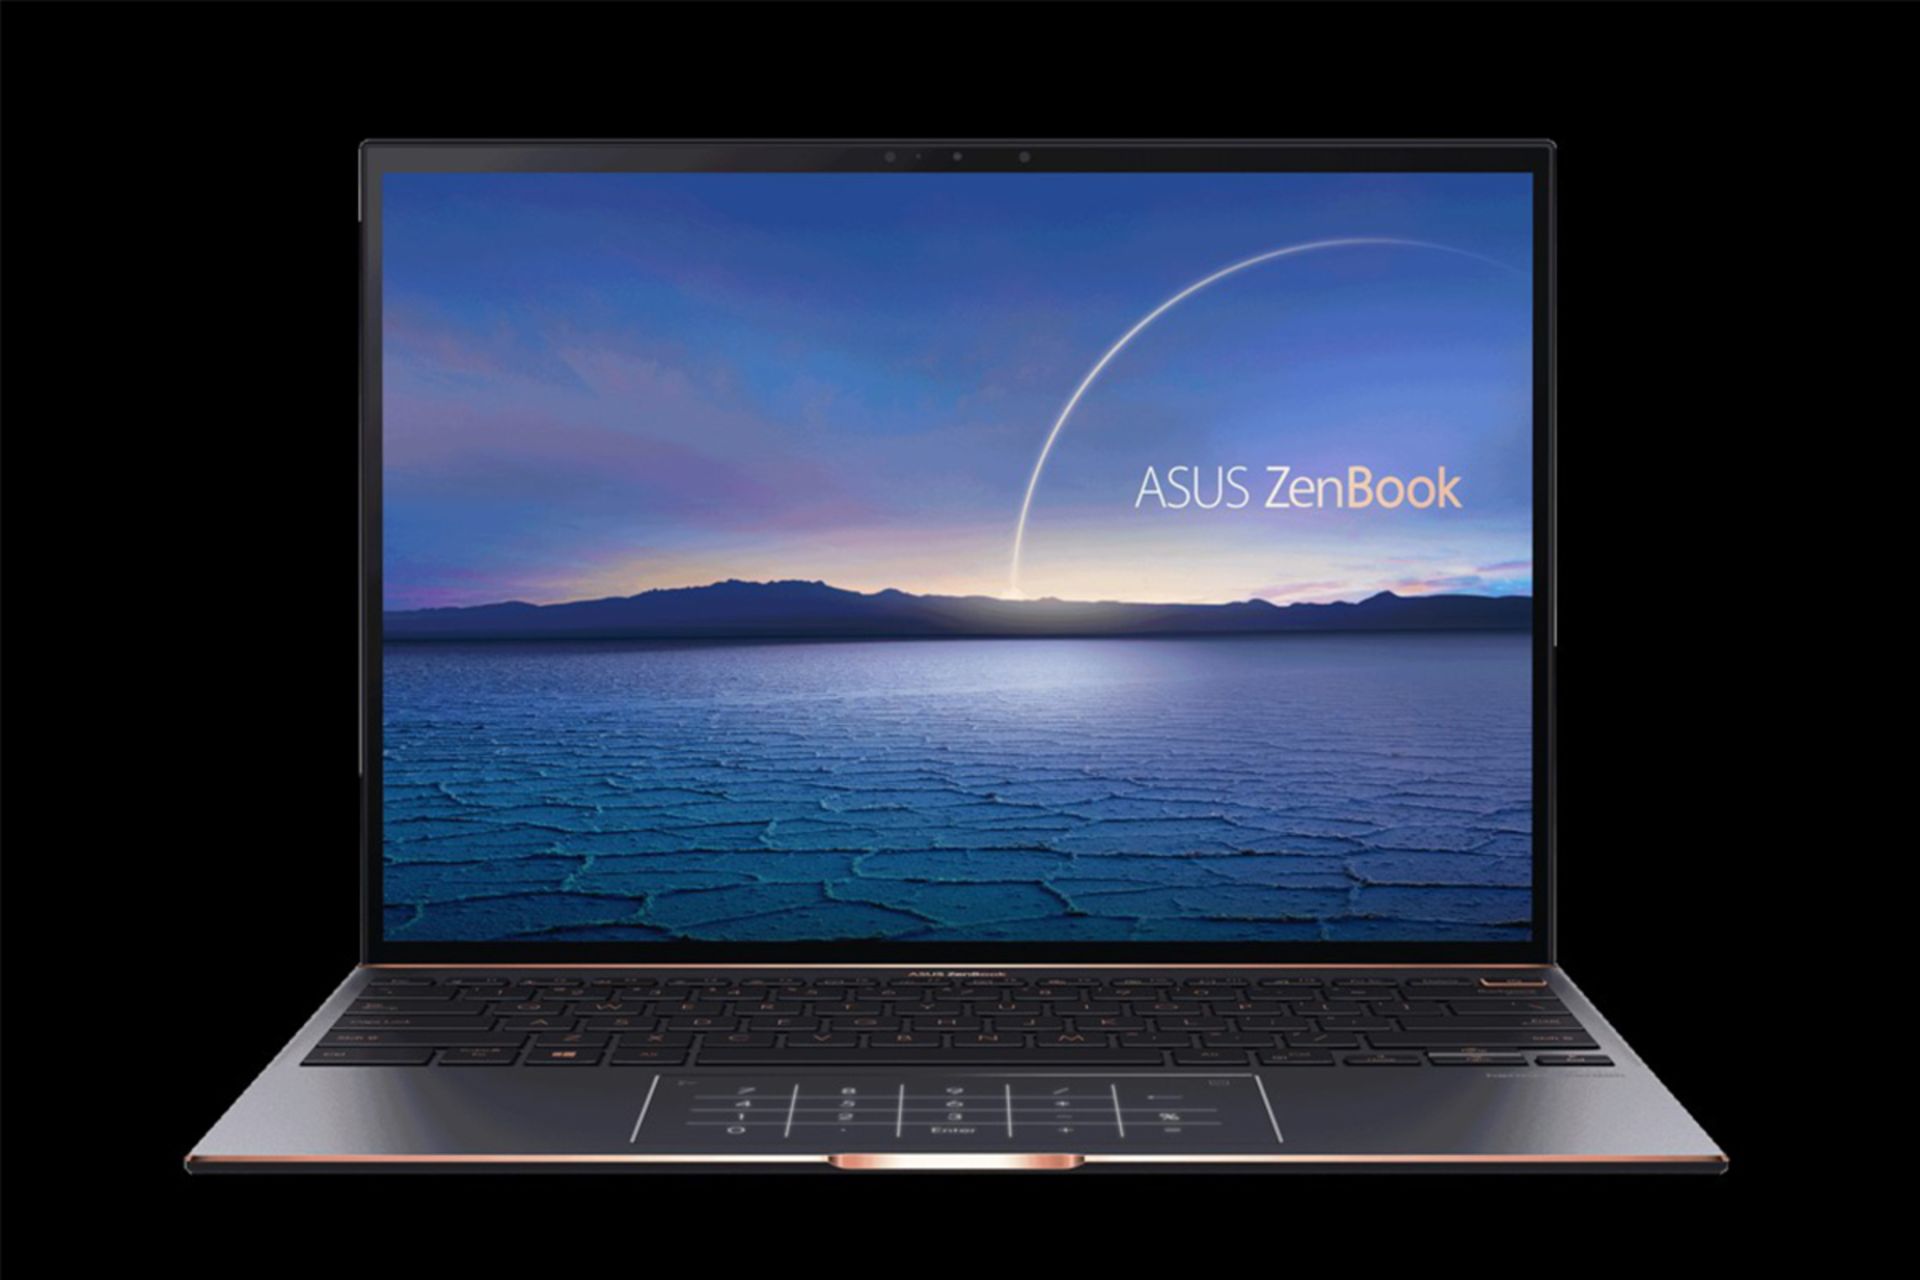 ذن بوک اس ایسوس / Asus ZenBook S از نمای جلو